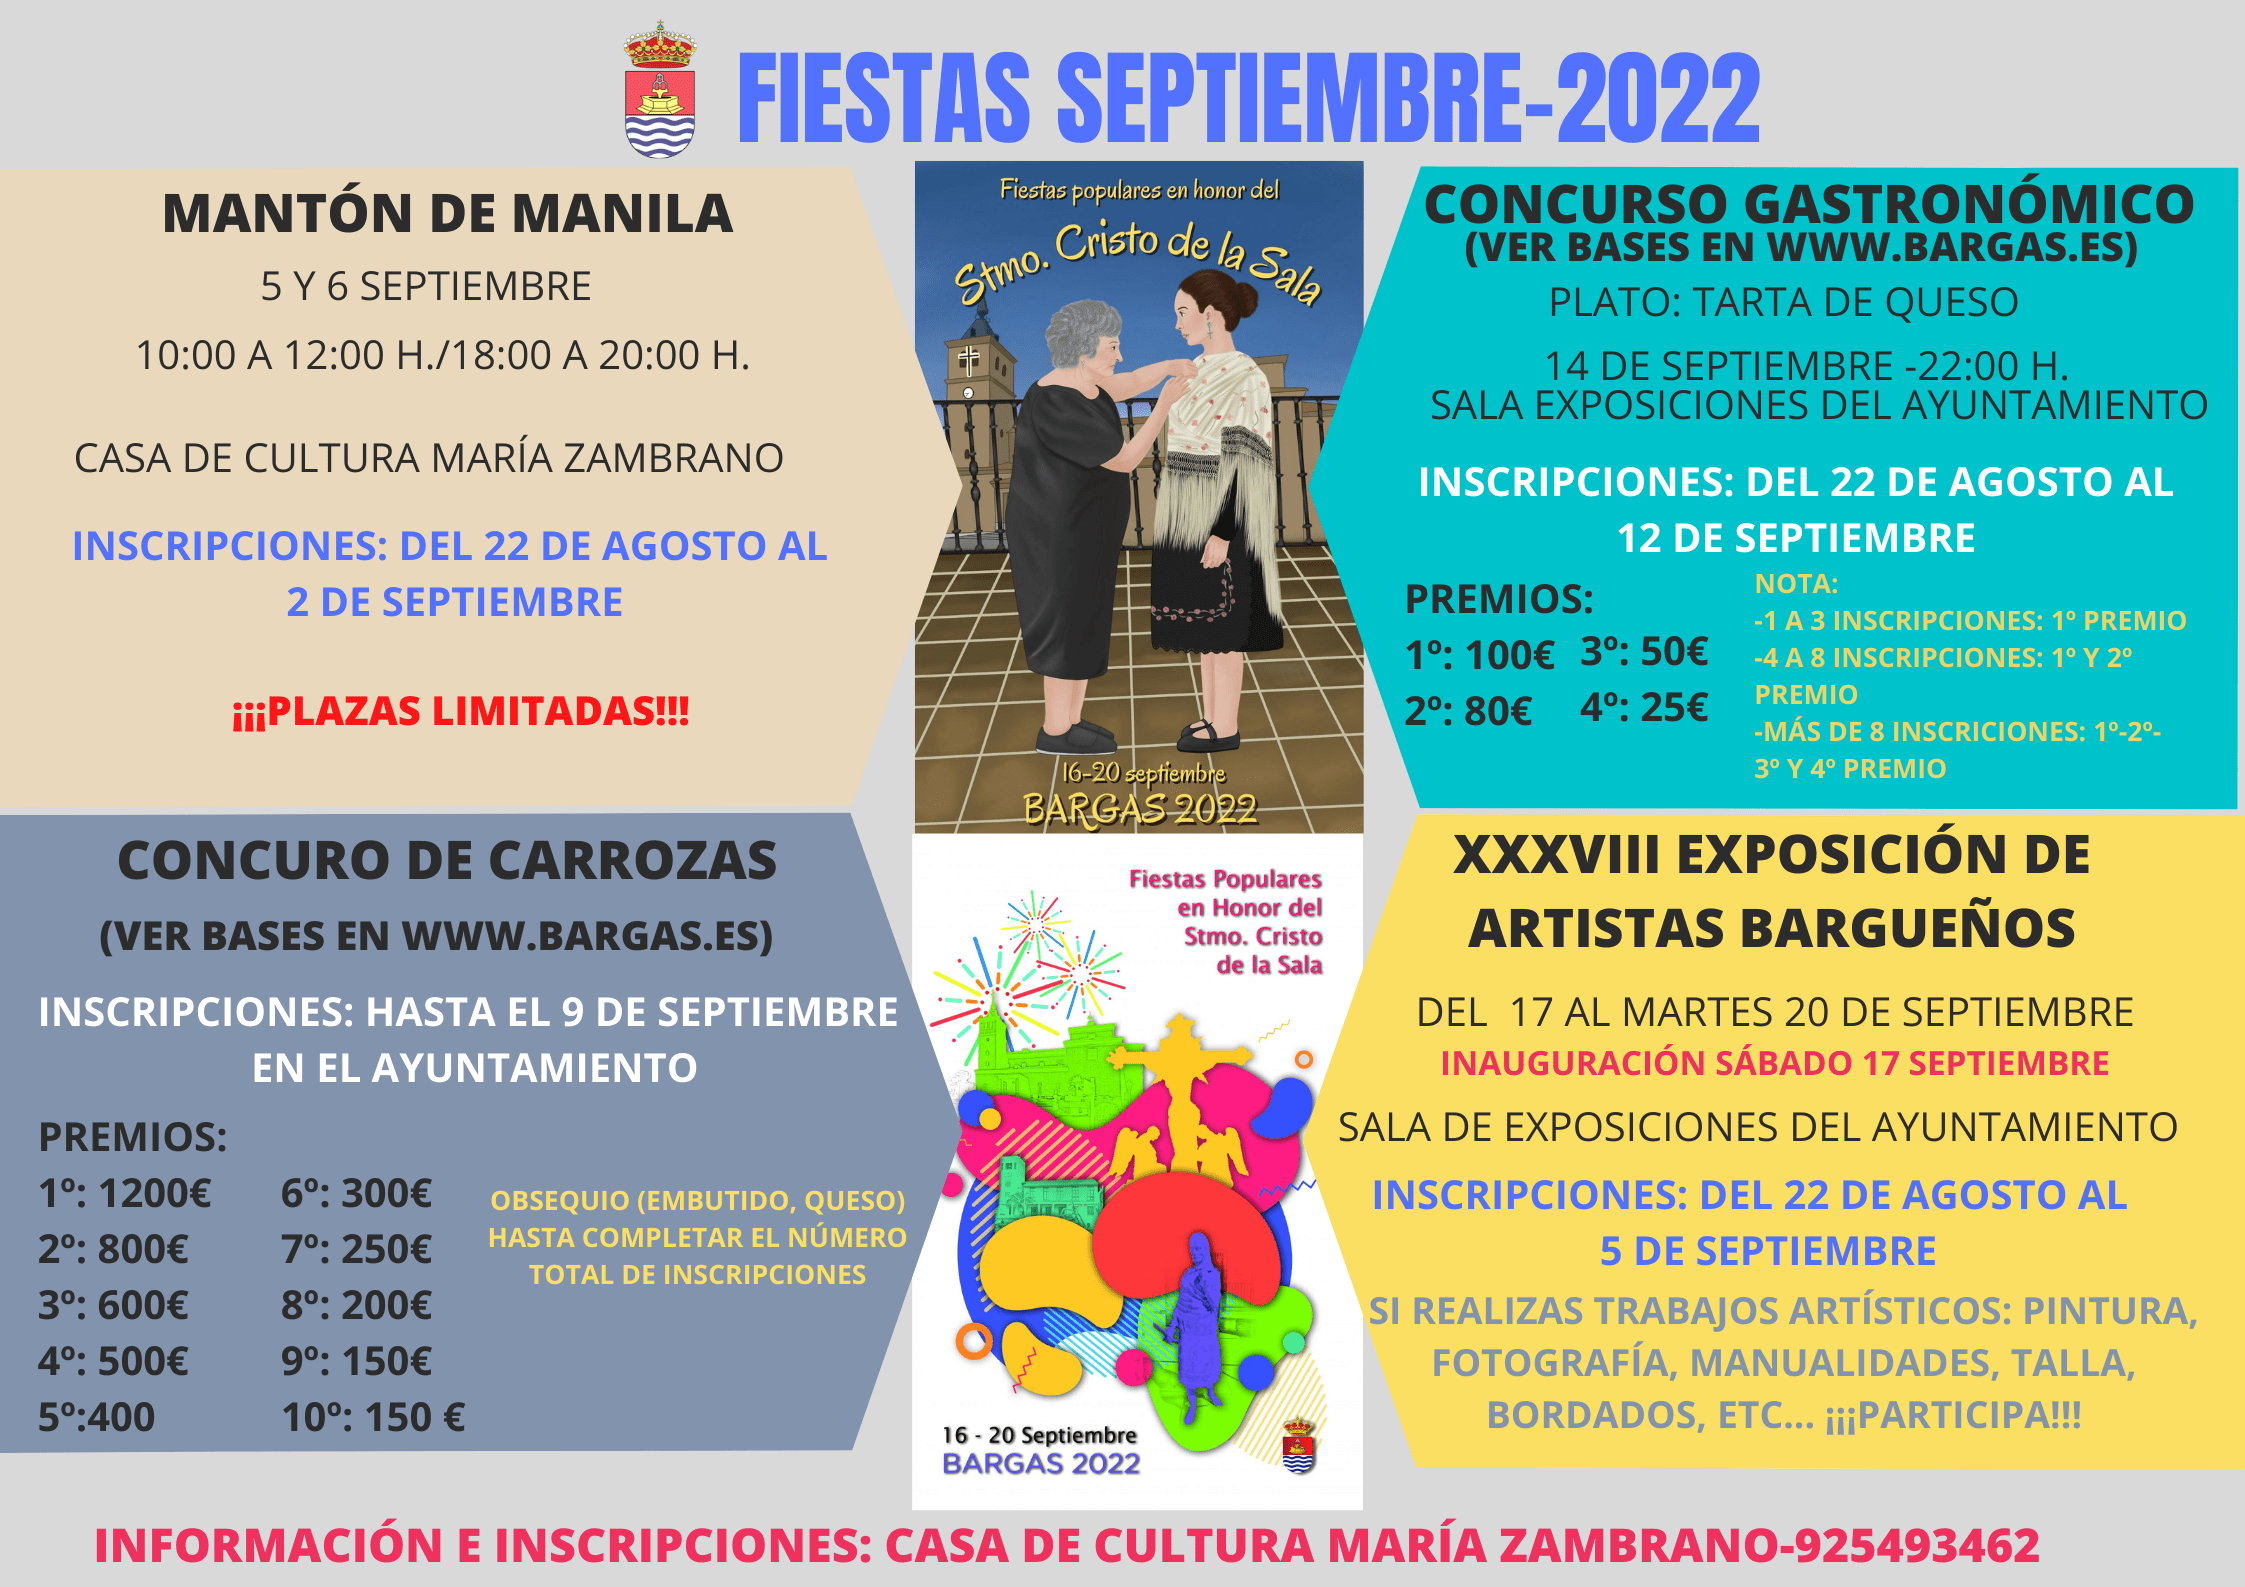 Concursos – Fiestas septiembre 2022